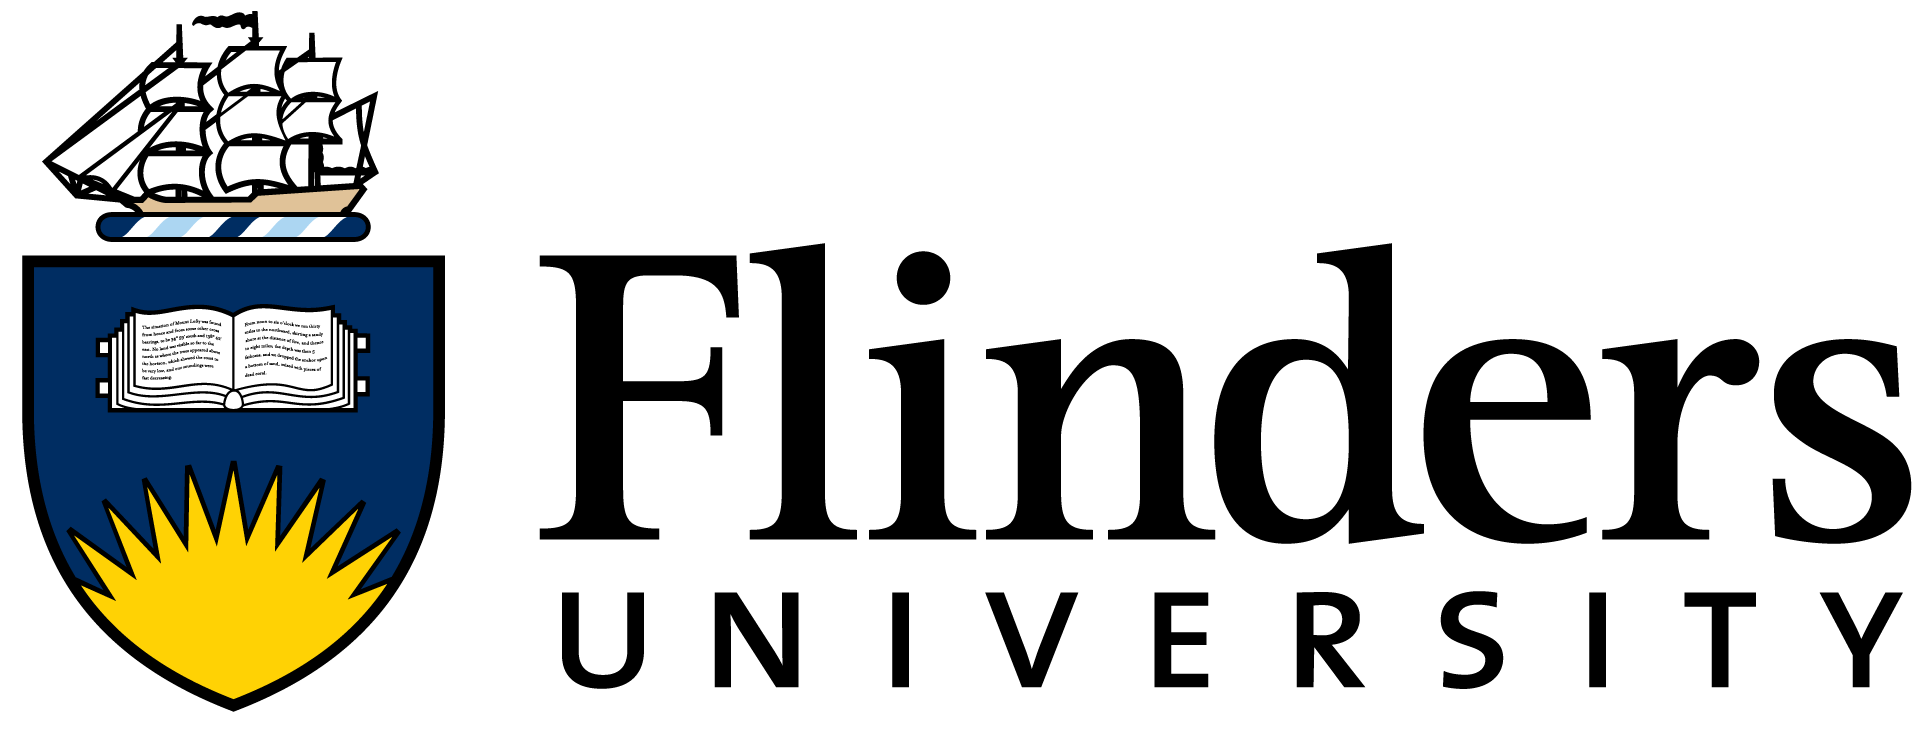 flinders logo.png